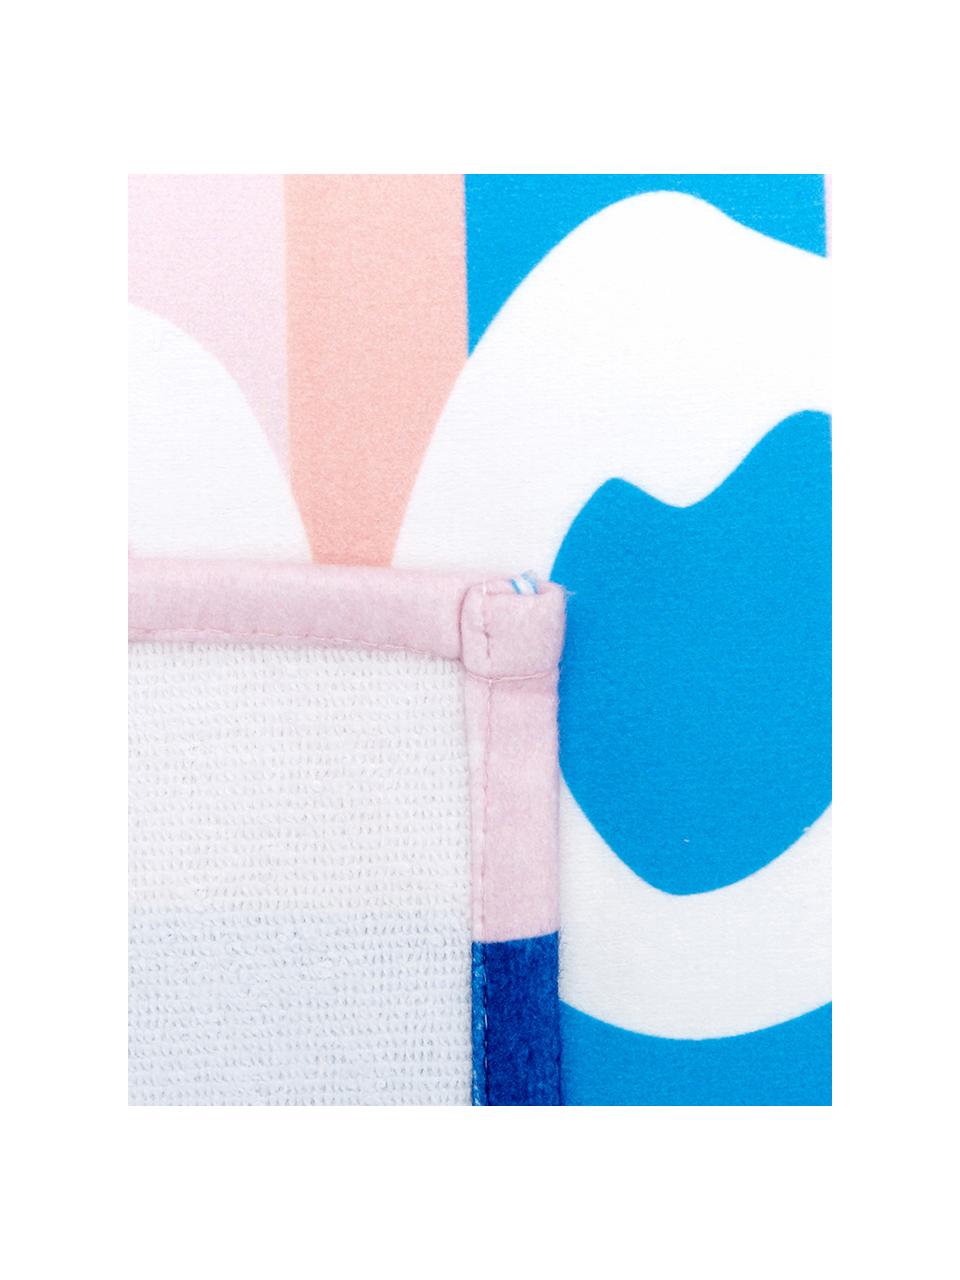 Leichtes Strandtuch Meet Me mit Schriftzug, 55% Polyester, 45% Baumwolle Sehr leichte Qualität, 340 g/m², Mehrfarbig, 70 x 150 cm